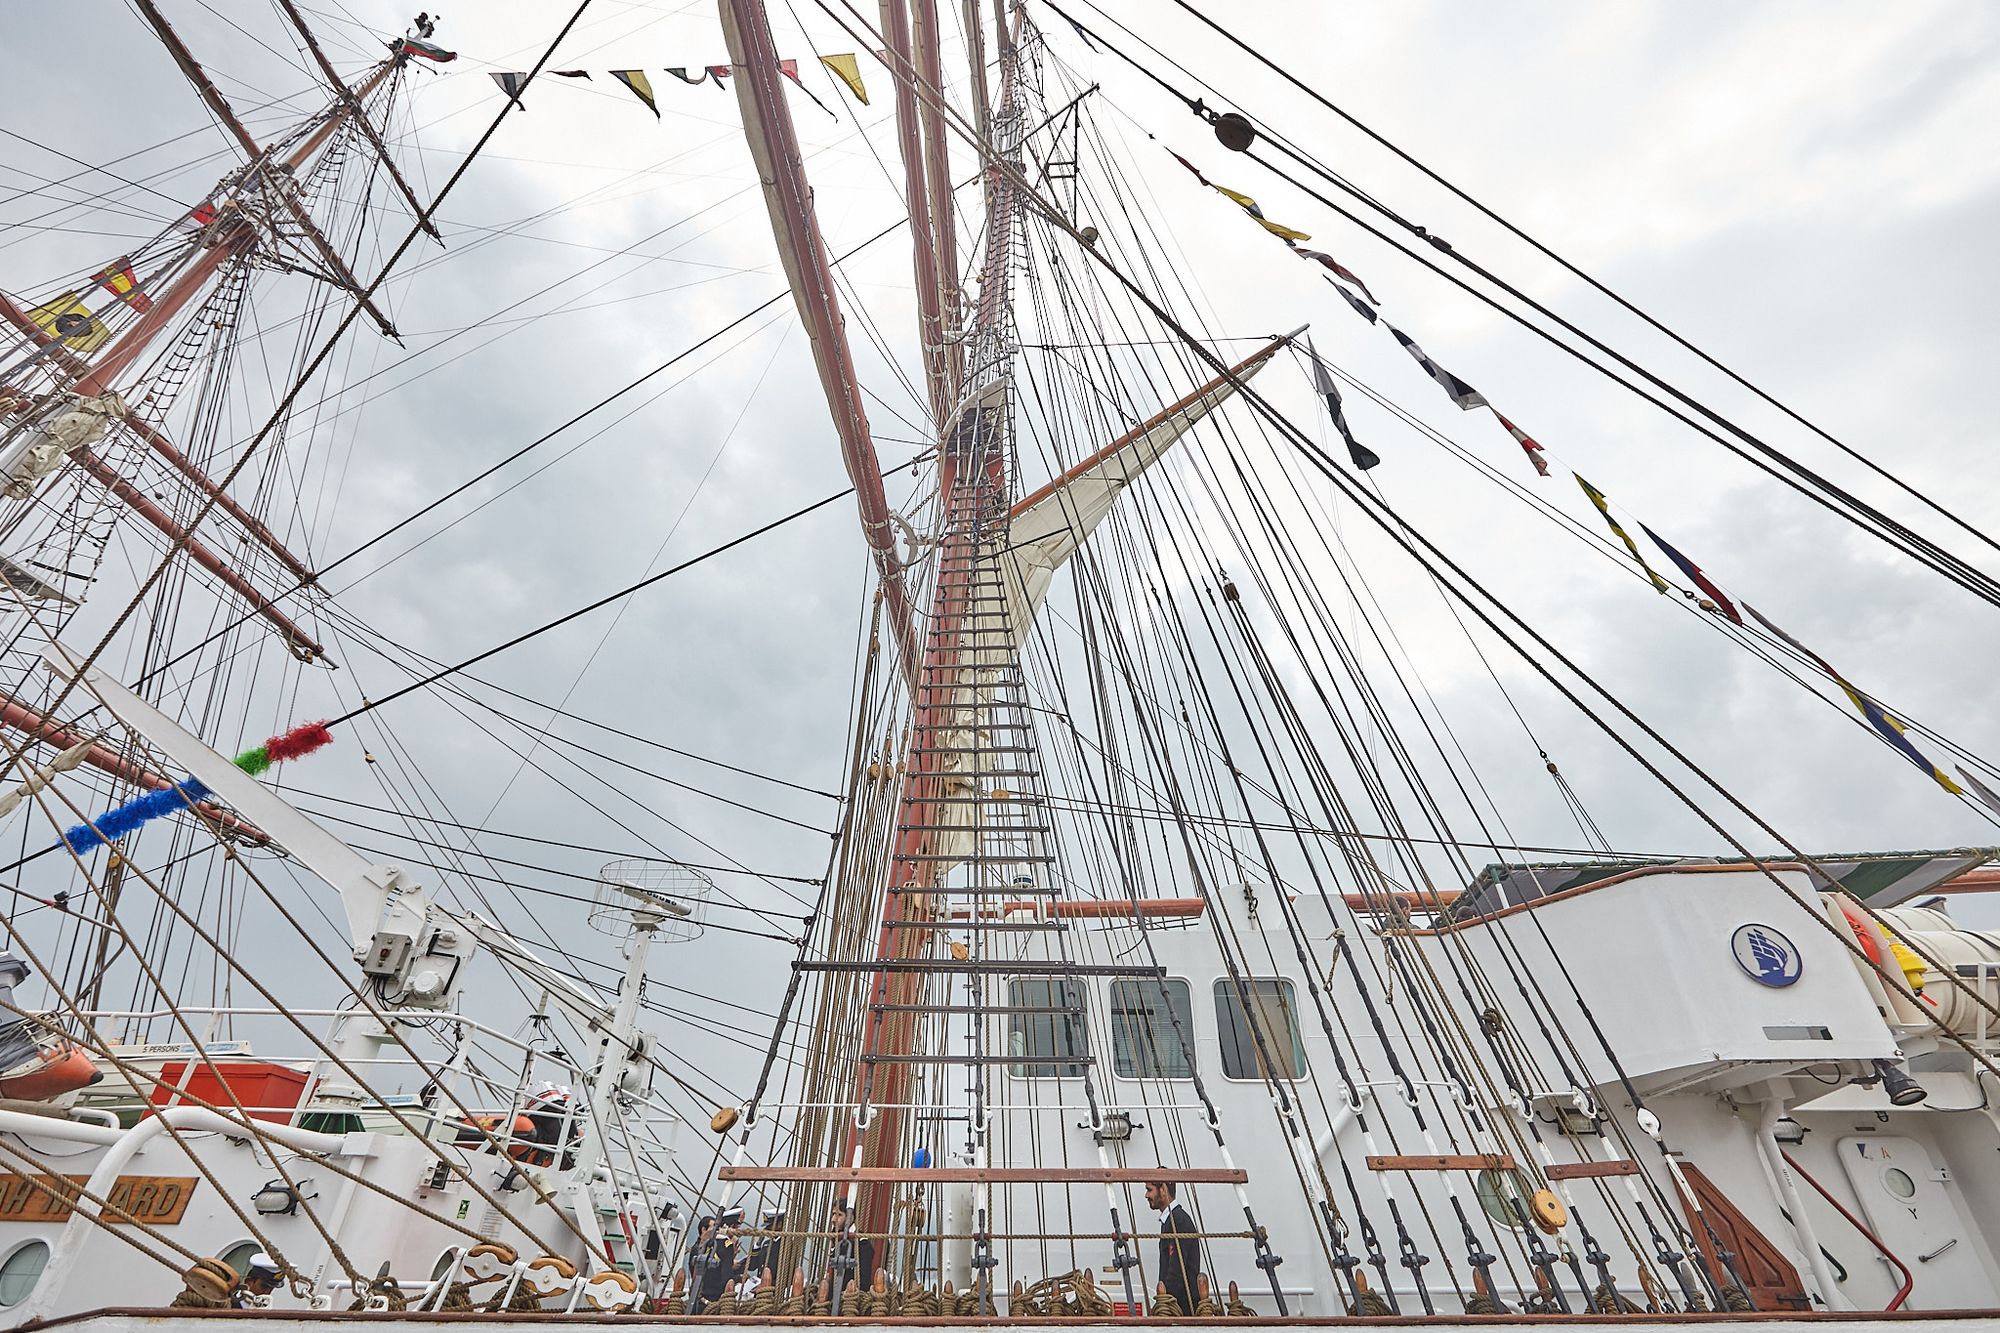 SCF Black Sea Tall Ships Regatta 2014